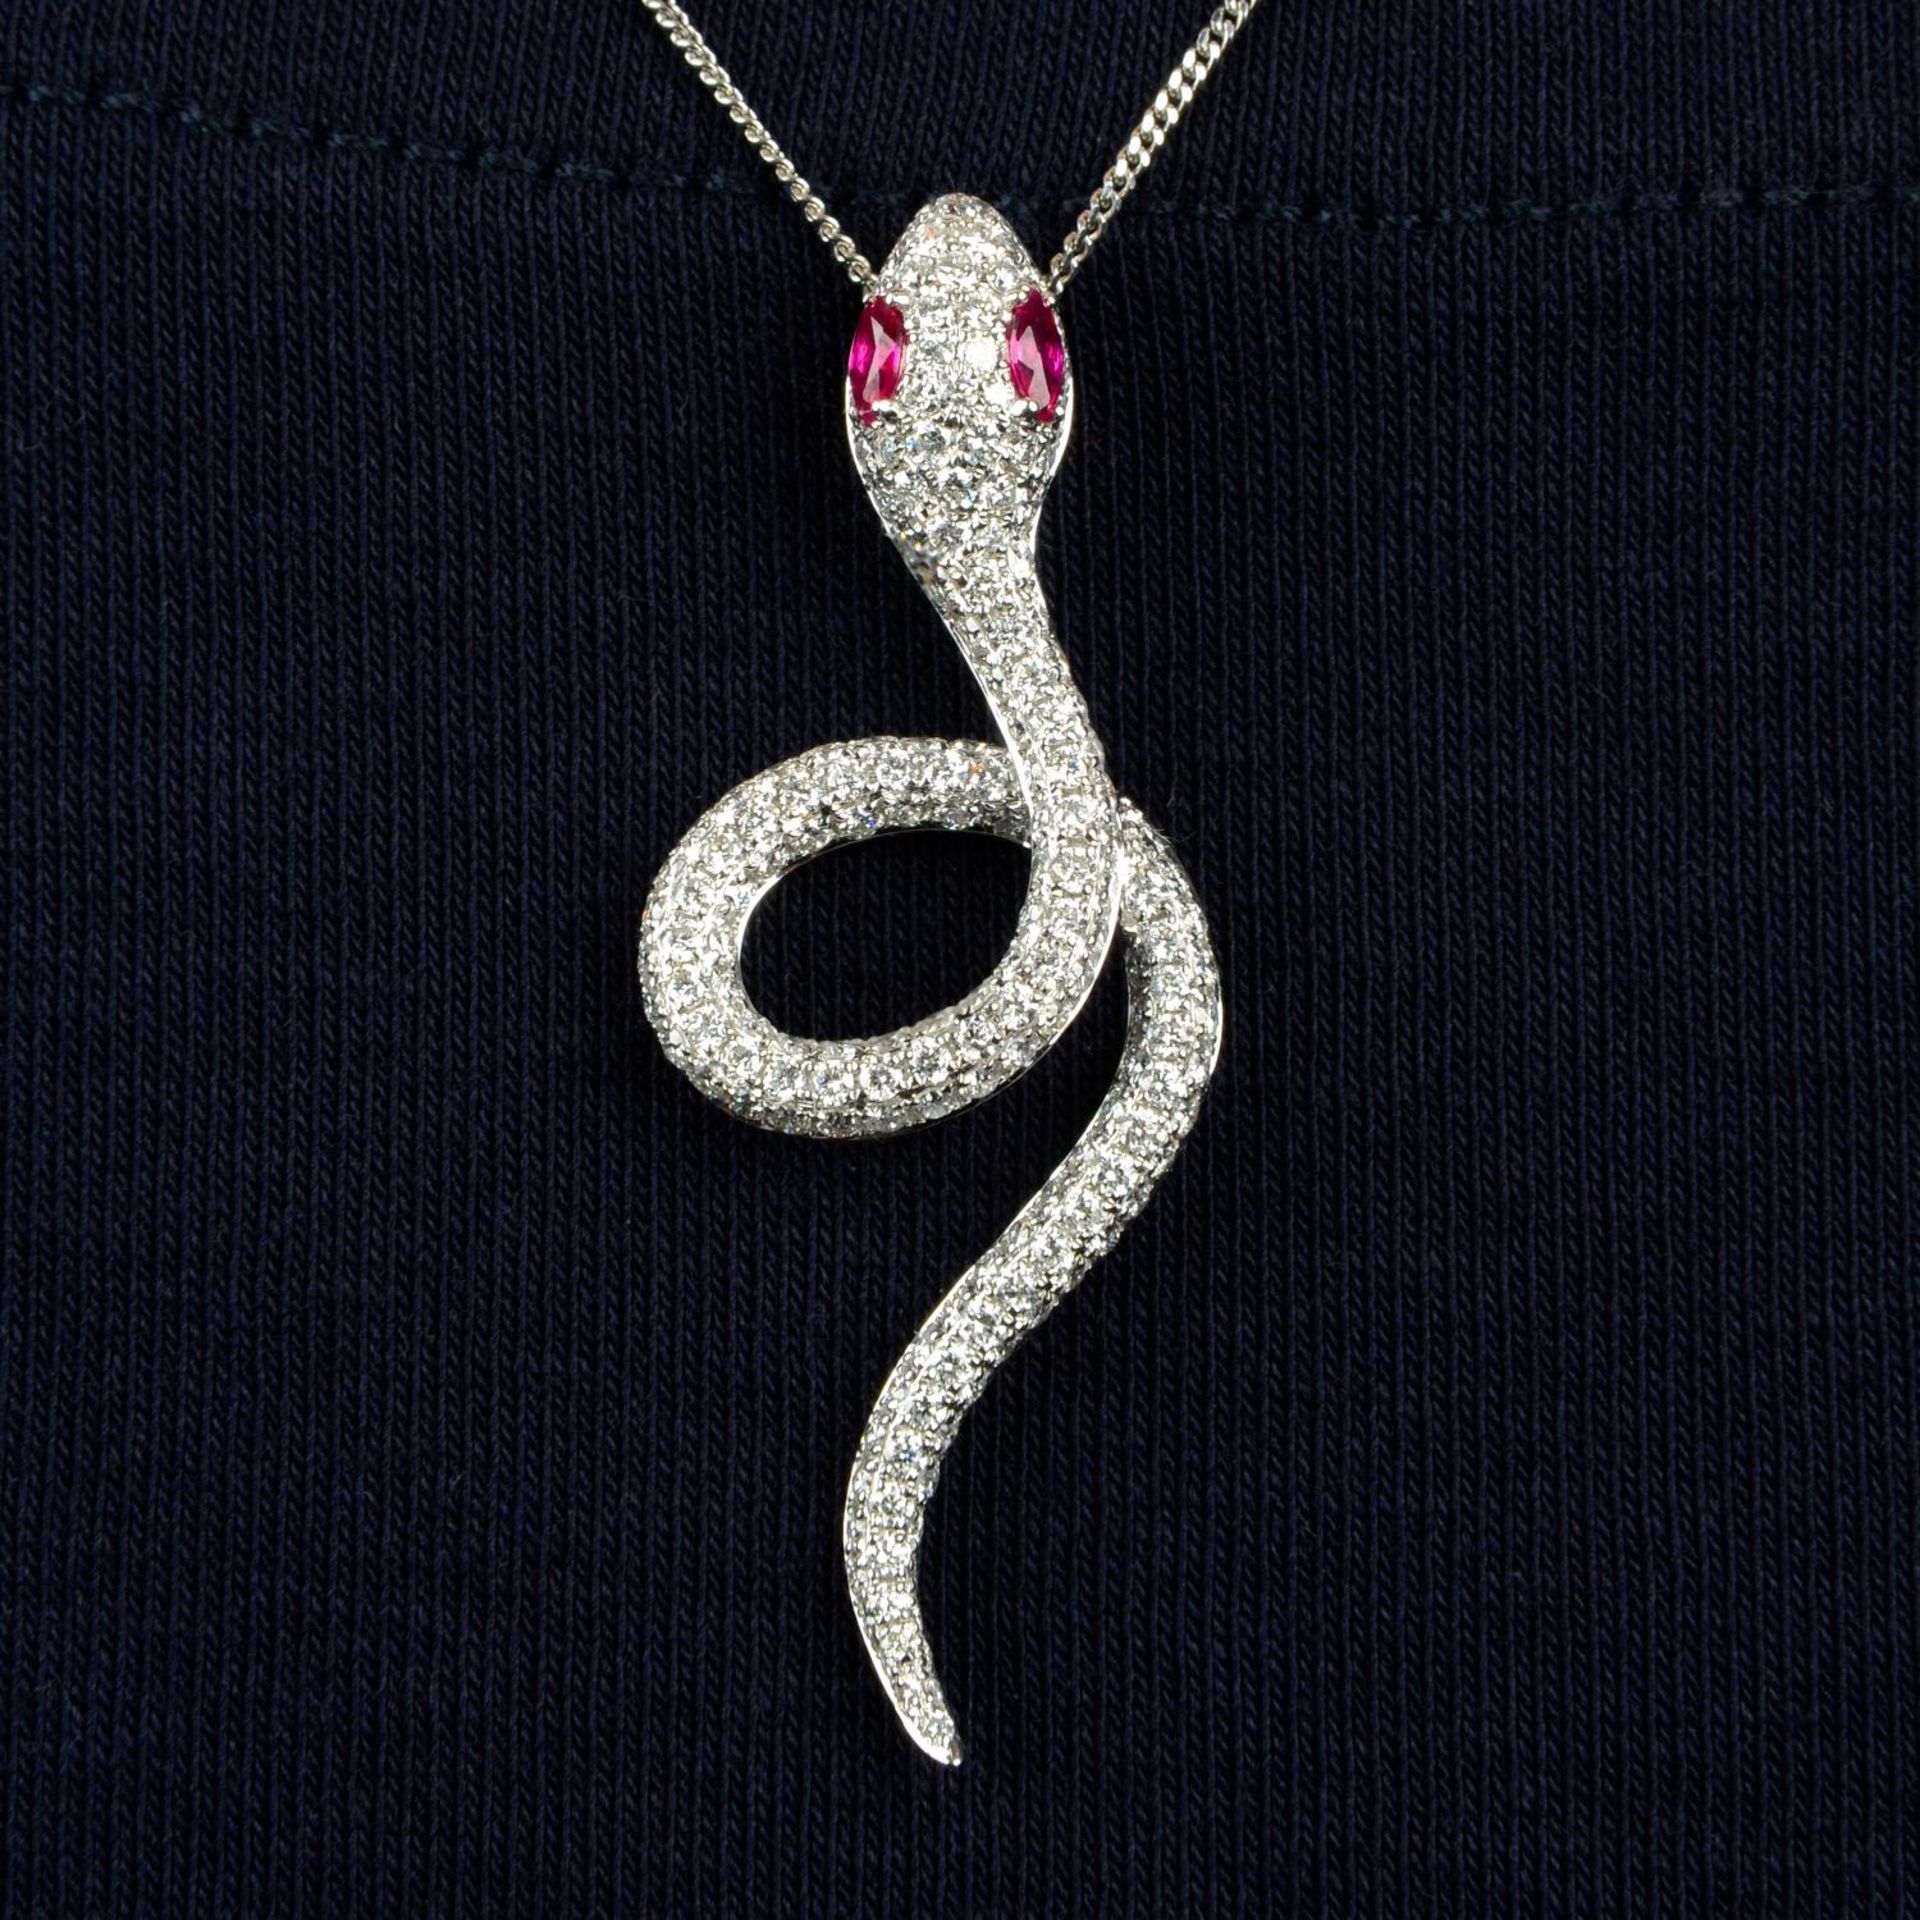 A pavé-set diamond snake pendant,